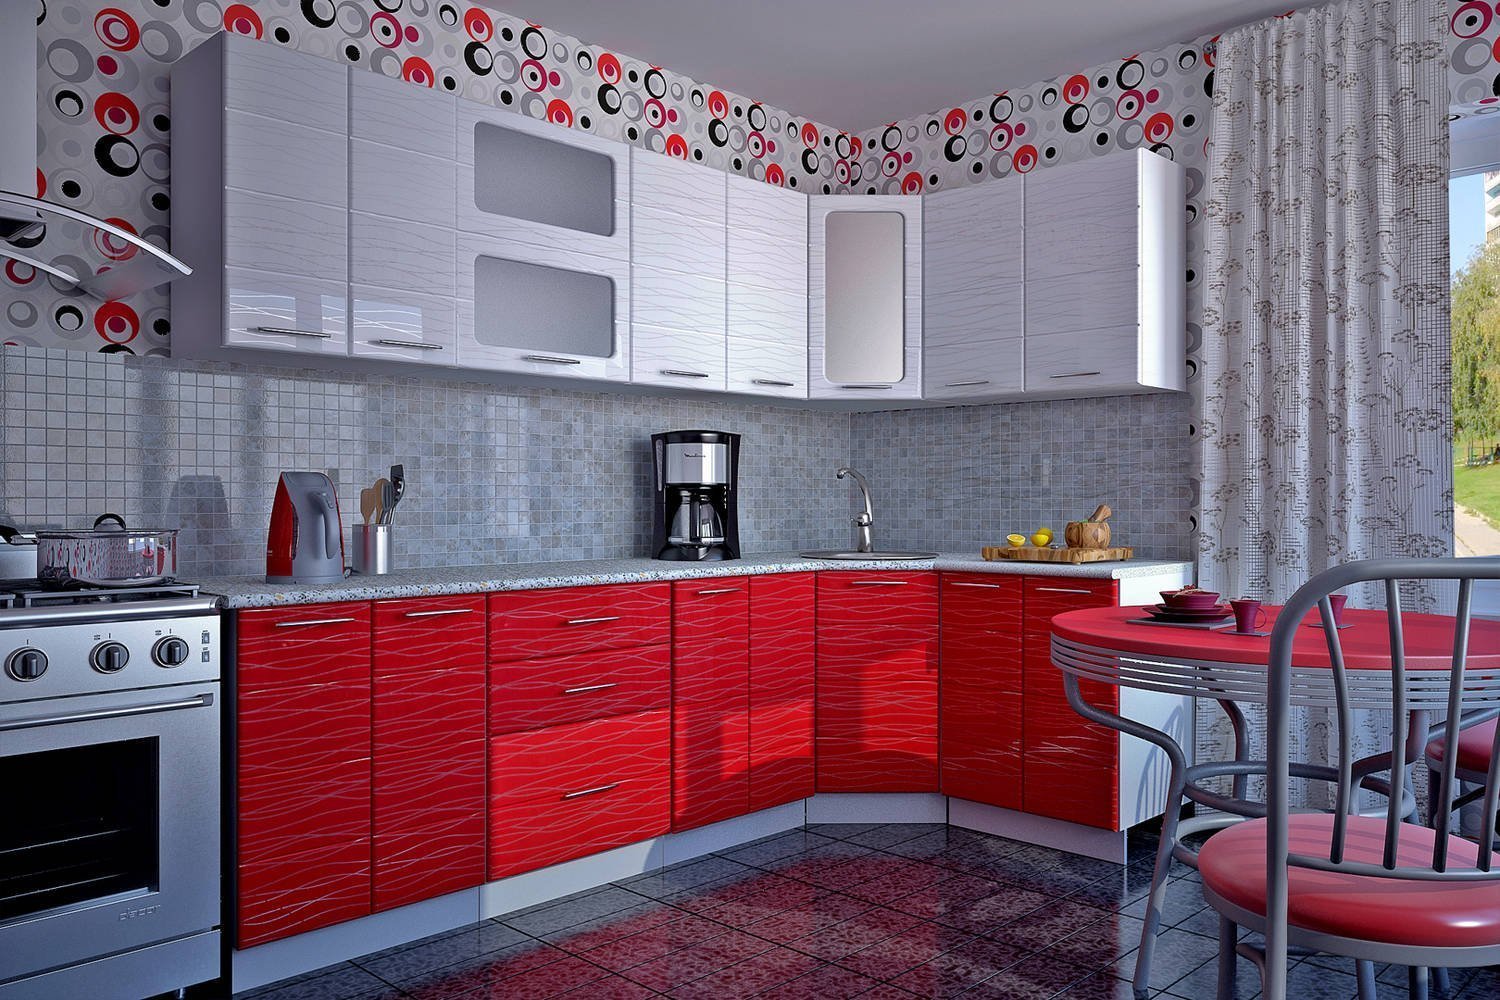 Кухни така. Красные кухни. Красный кухонный гарнитур. Кухонный гарнитур красный с белым. Красивые красные кухни.